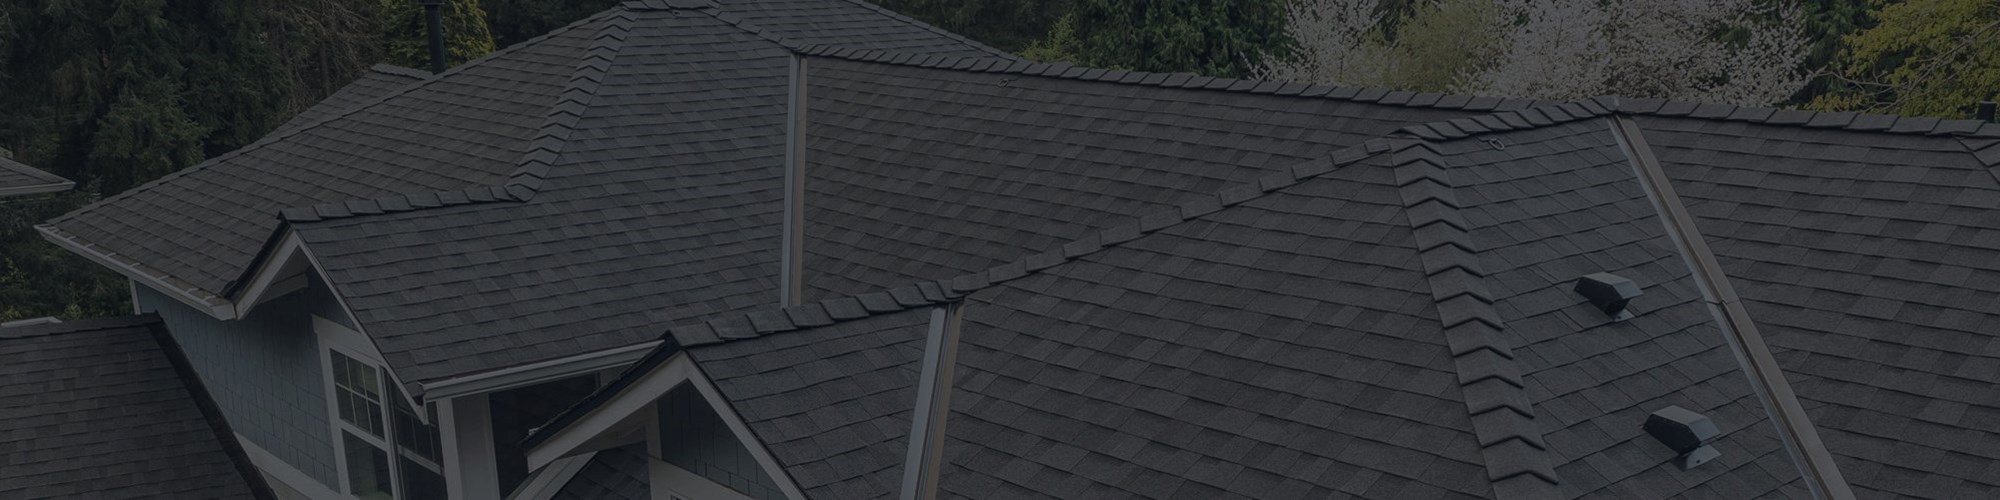 Freshly repaired grey asphalt roof in Seattle Washington